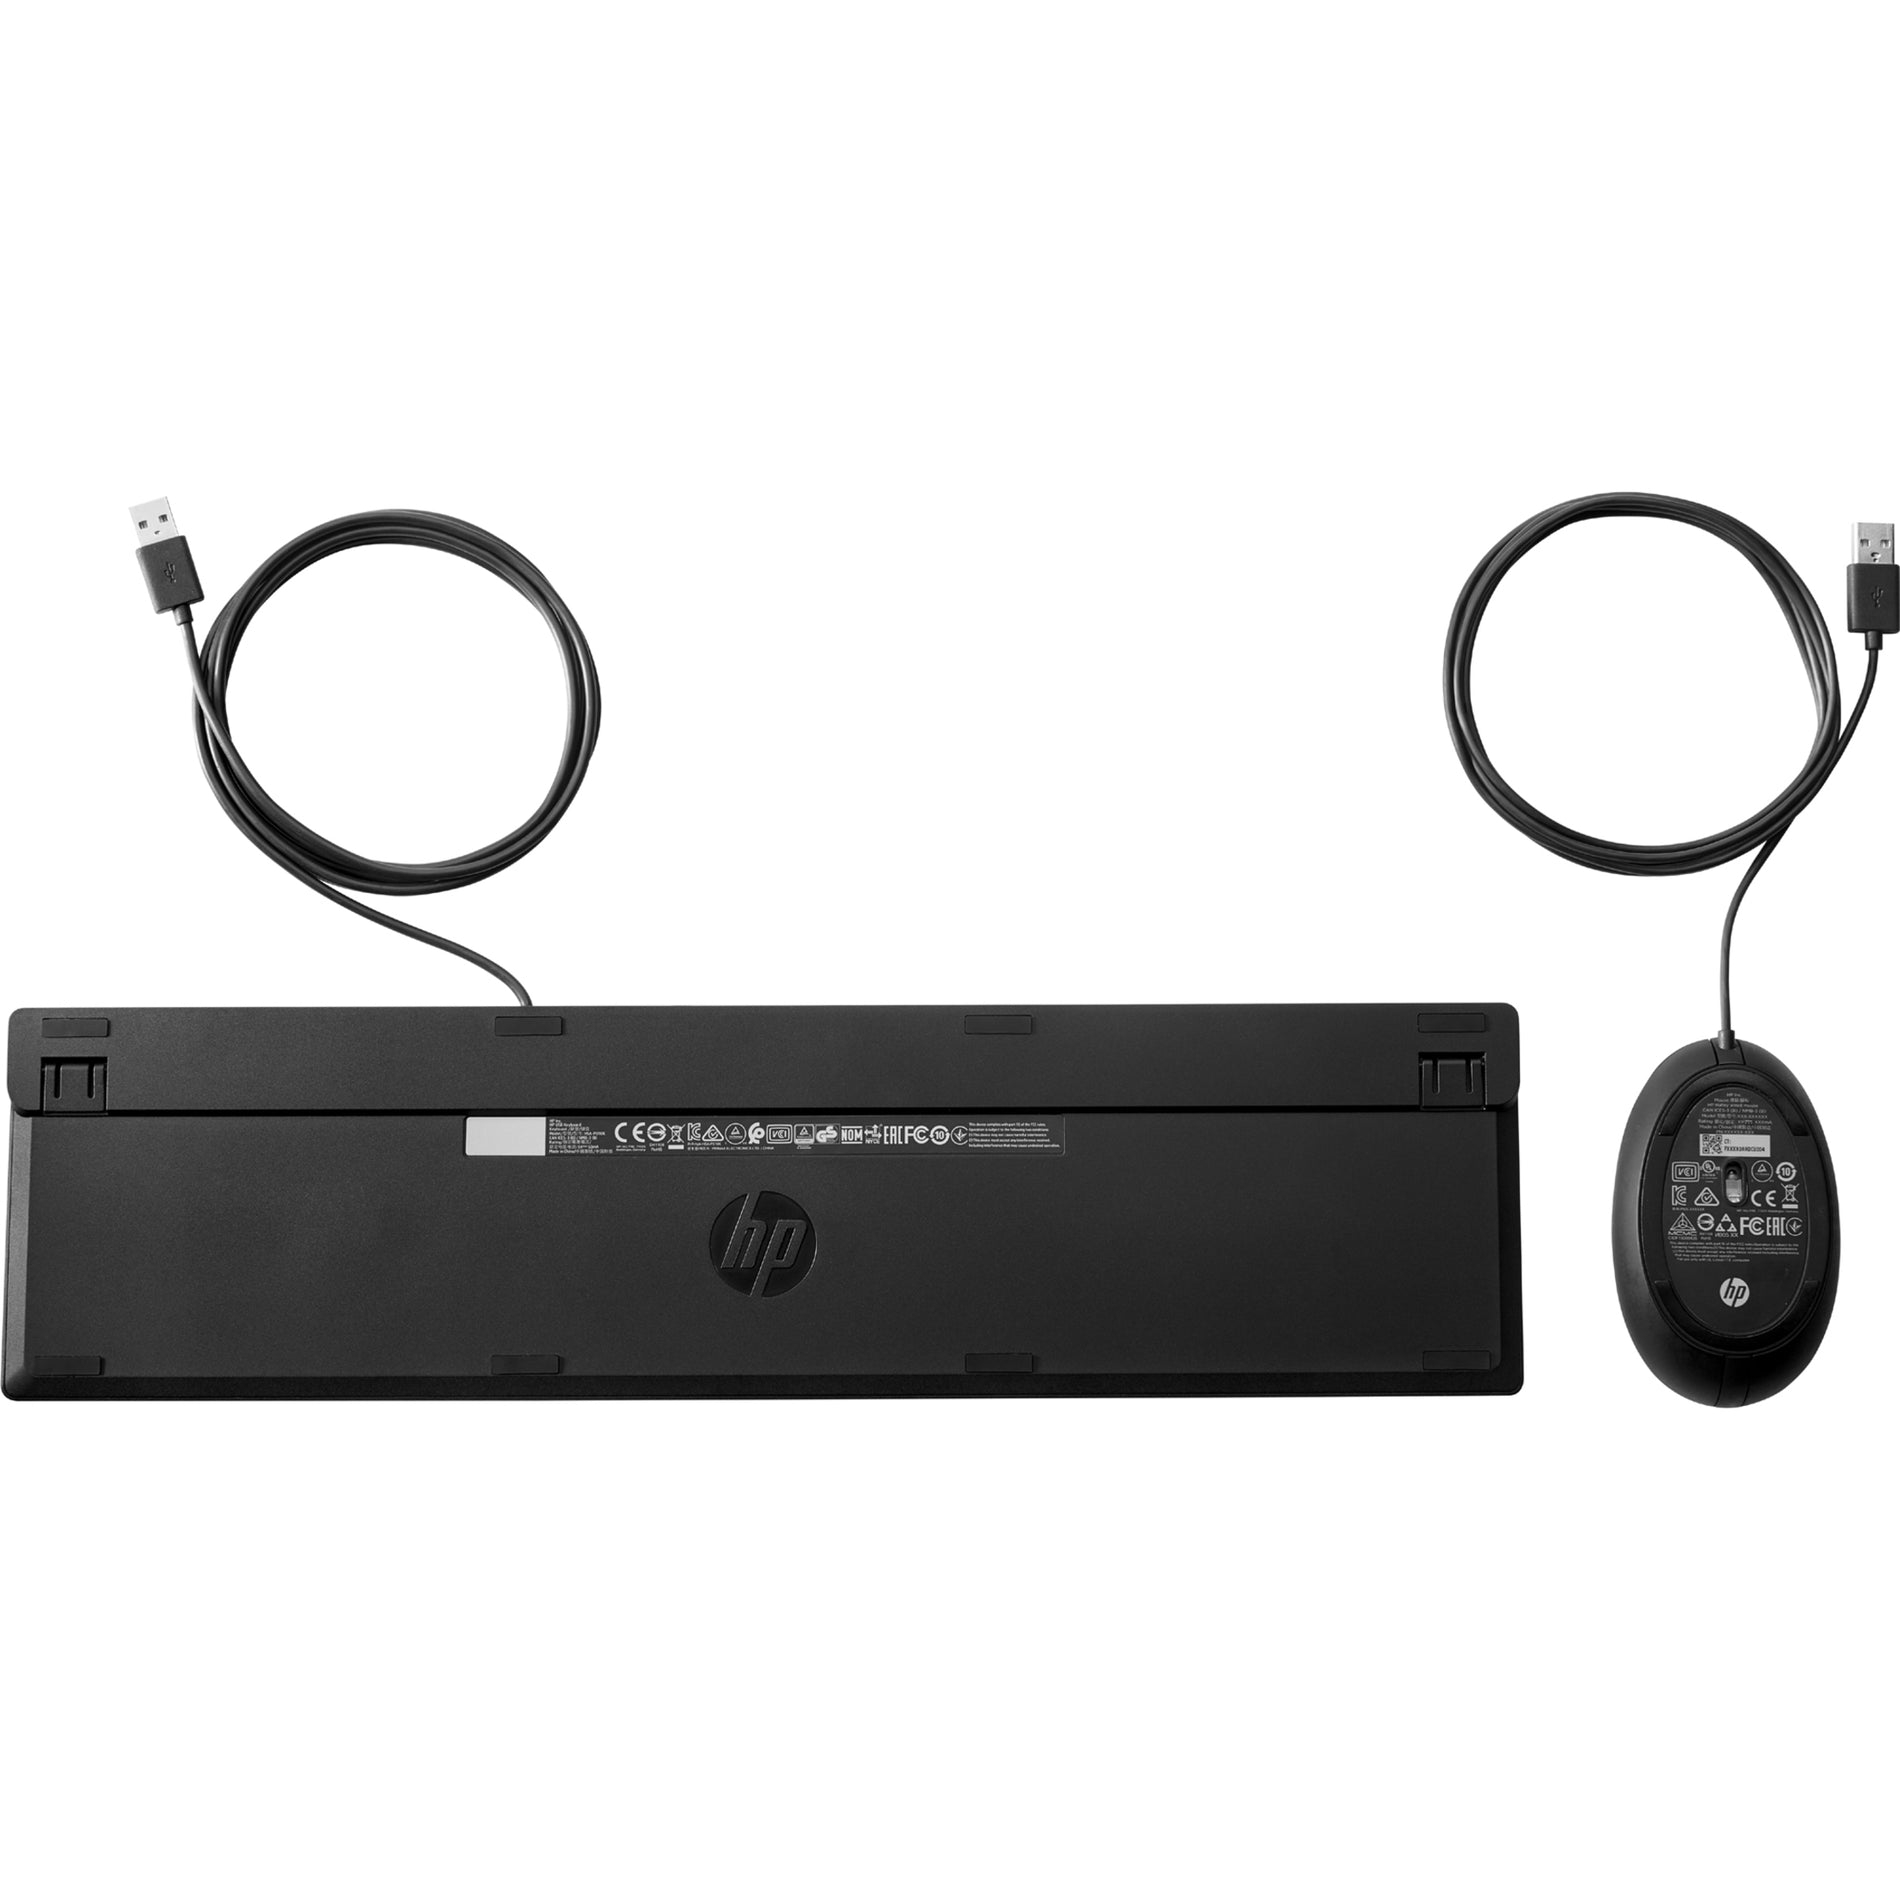 HP Wired Desktop 320MK Mouse and Keyboard, Quiet Keys, LED Indicator, Plug & Play, Adjustable Tilt, Low-profile Keys